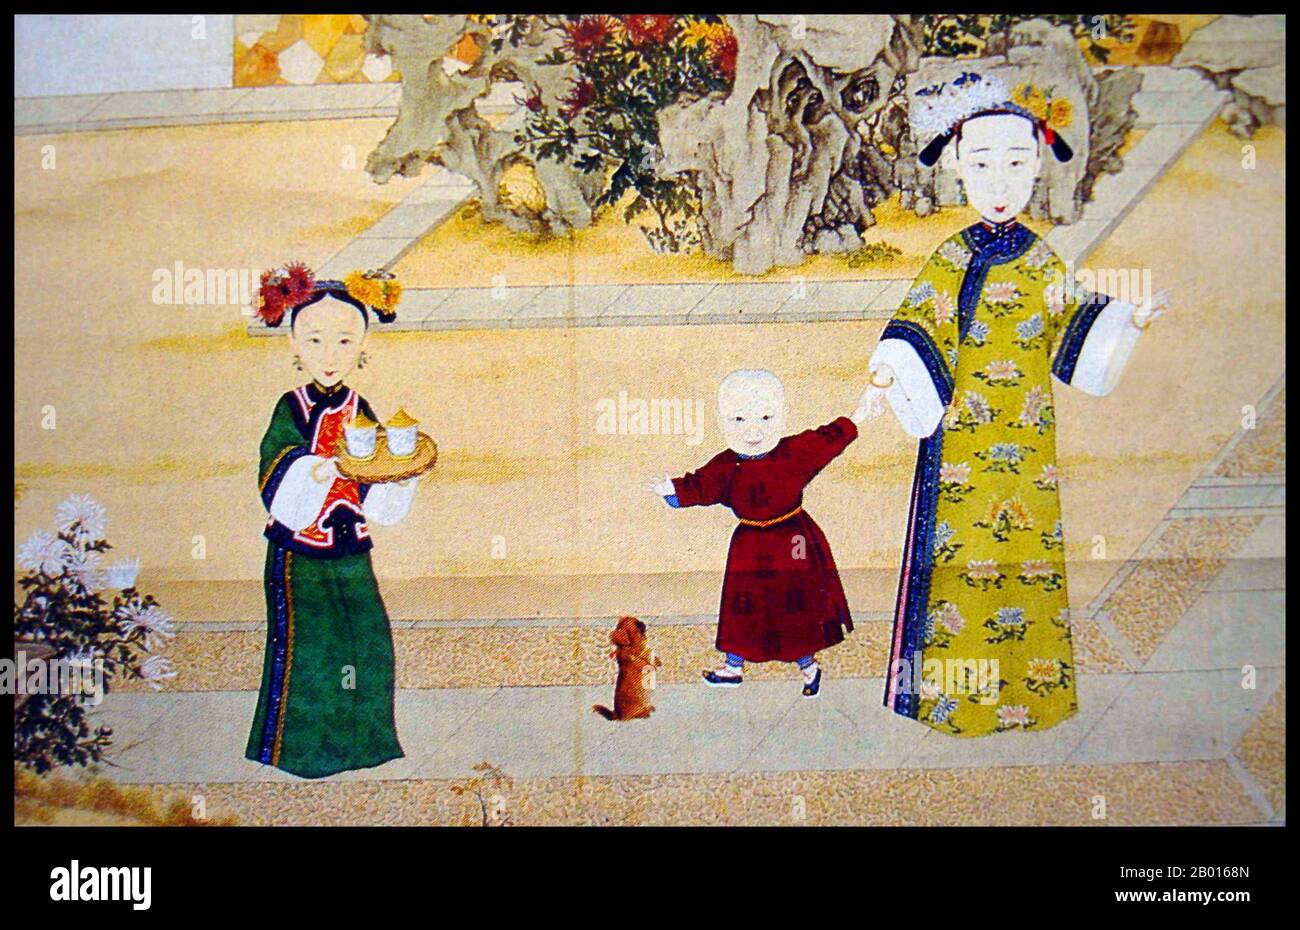 Cina: Imperatrice Xiao Jing Cheng (19 giugno 1812 - 21 agosto 1855), quarto consorte dell'imperatore Daoguang, con il principe Yixin. Pittura di Handscroll, c.. 1830-1855. L'imperatrice Xiaojingcheng fu consorte dell'imperatore Daoguang, madre del principe Yixin, noto anche come Principe Gong, e madre adottiva del principe Yizhu, l'imperatore Xianfeng. Affollato dal clan Borjigit di Khorchin Mongol Plain Blue Banner, Lady Borjigit divenne 'concubine Jing' nel 1826, prima di essere elevato a 'Consort Jing' l'anno successivo. Otto giorni prima della sua morte, a causa degli sforzi di Yixin, le fu dato il titolo di 'Empress Dowager Kangci'. Foto Stock